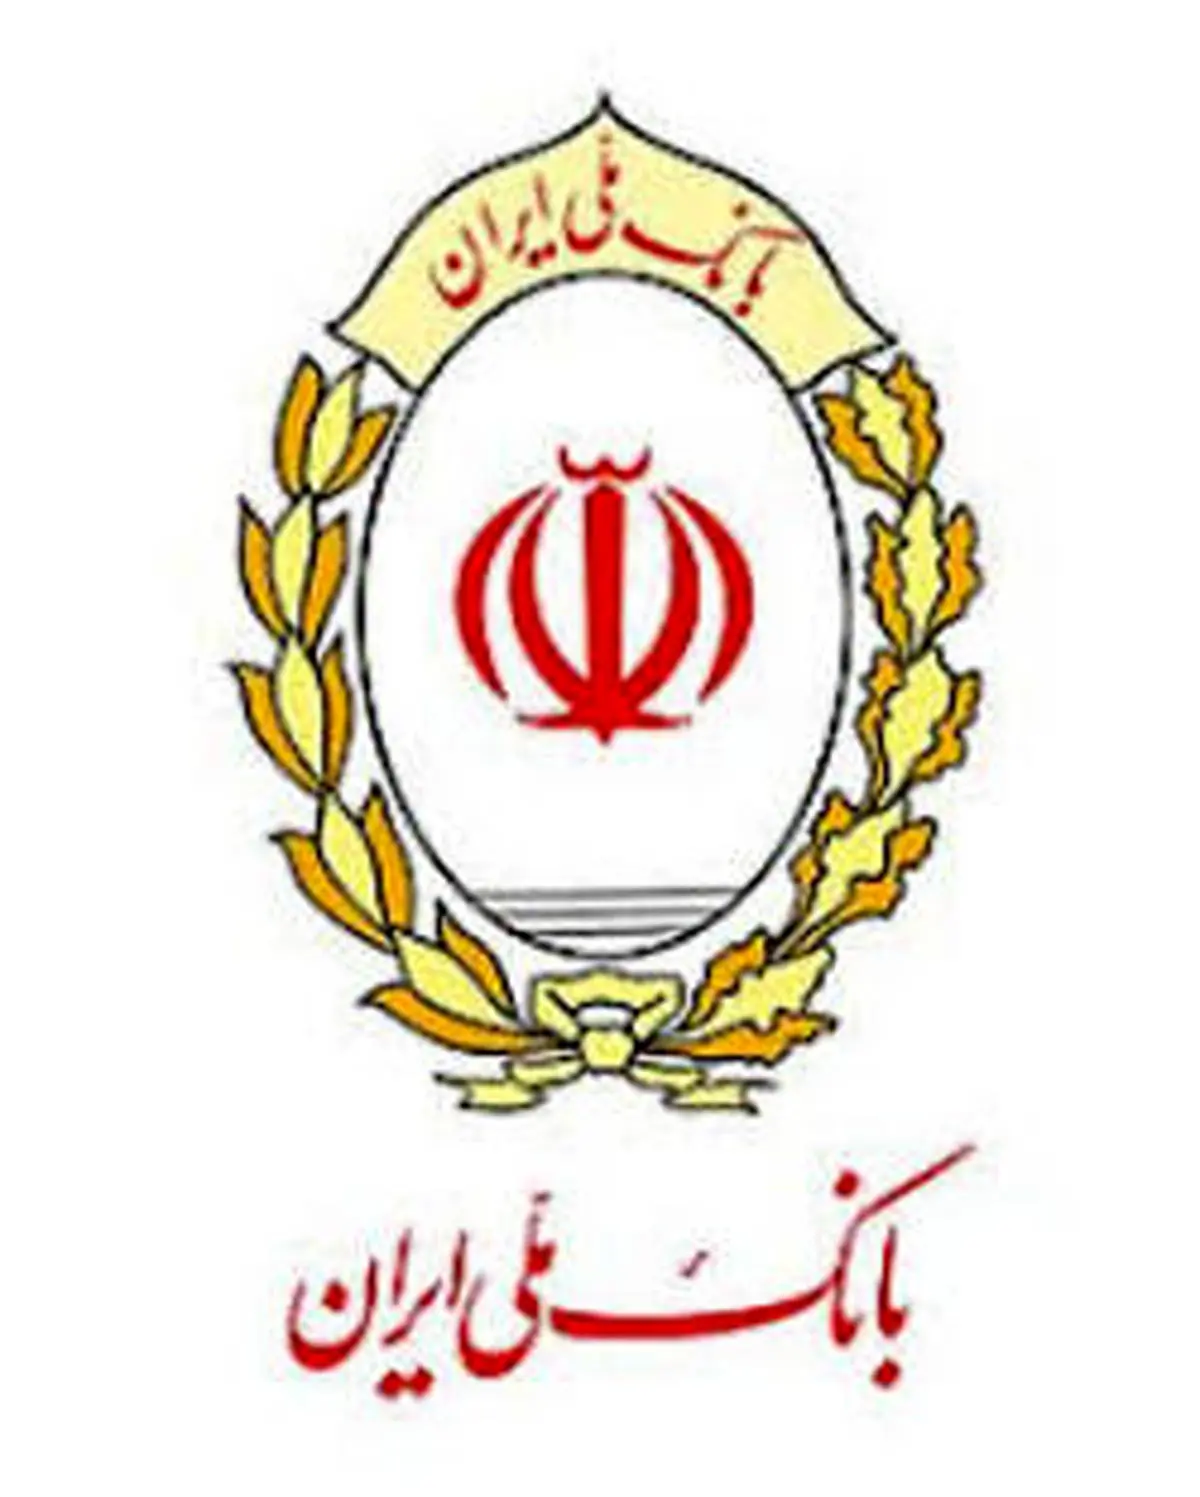 پیوستن بانک ملی ایران به پویش هلال احمر برای کمک به سیل زدگان